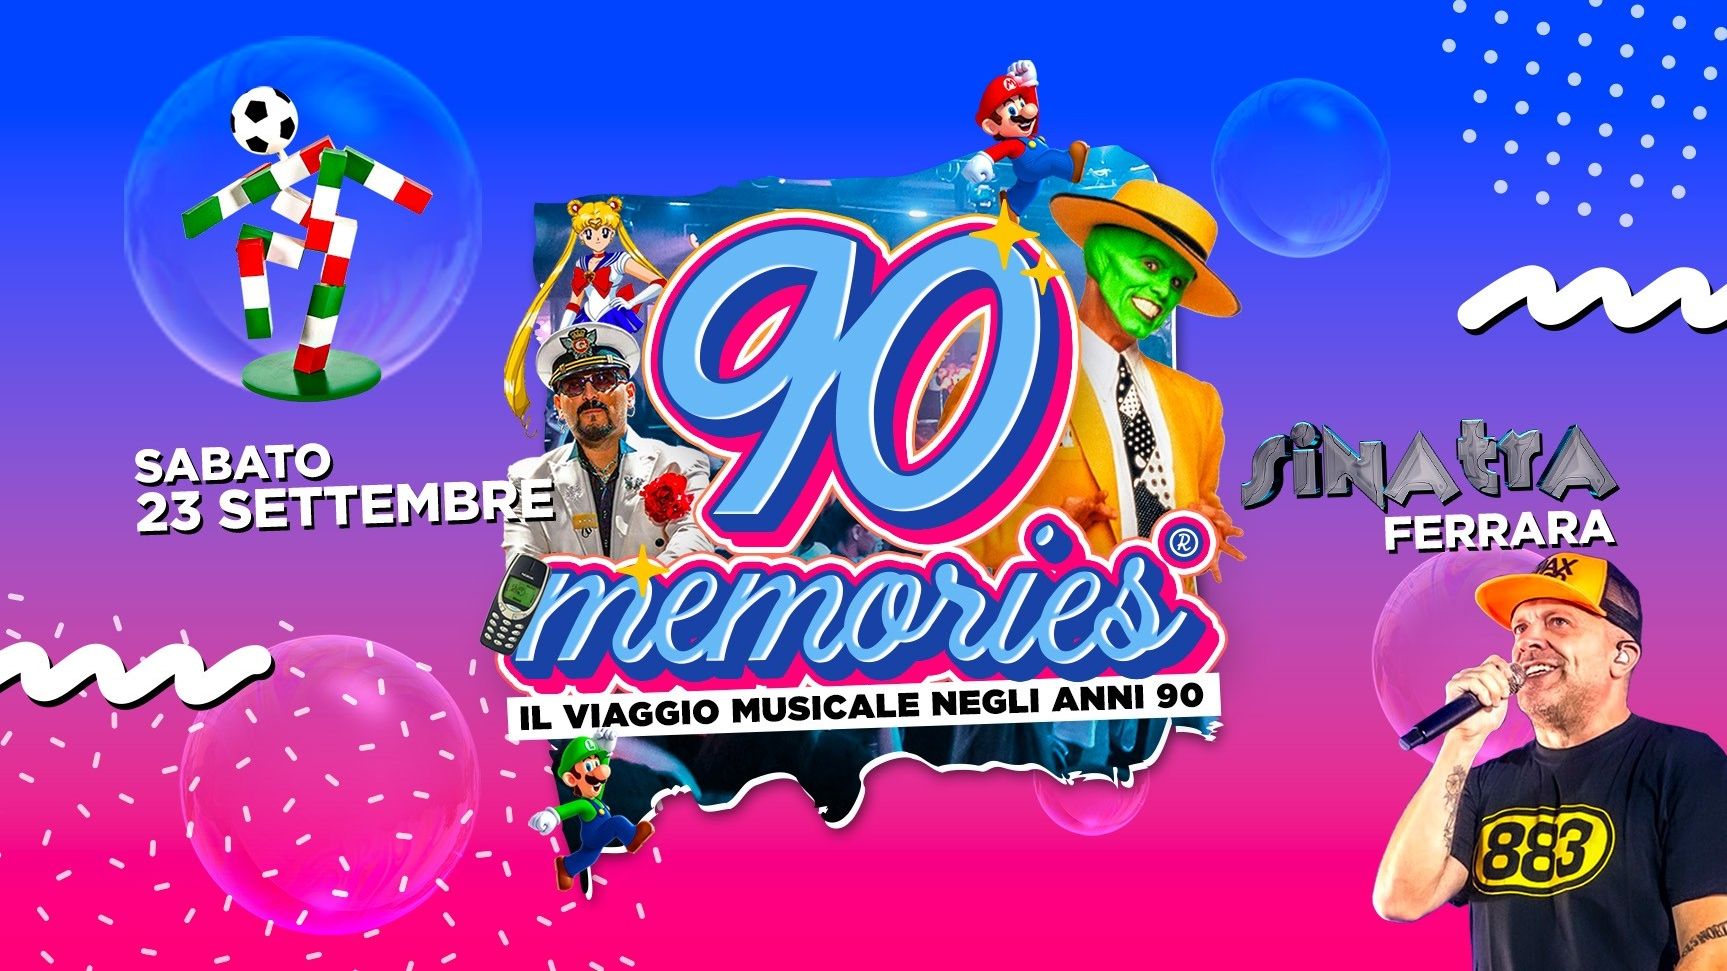 Memories - Il viaggio musicale negli anni '90